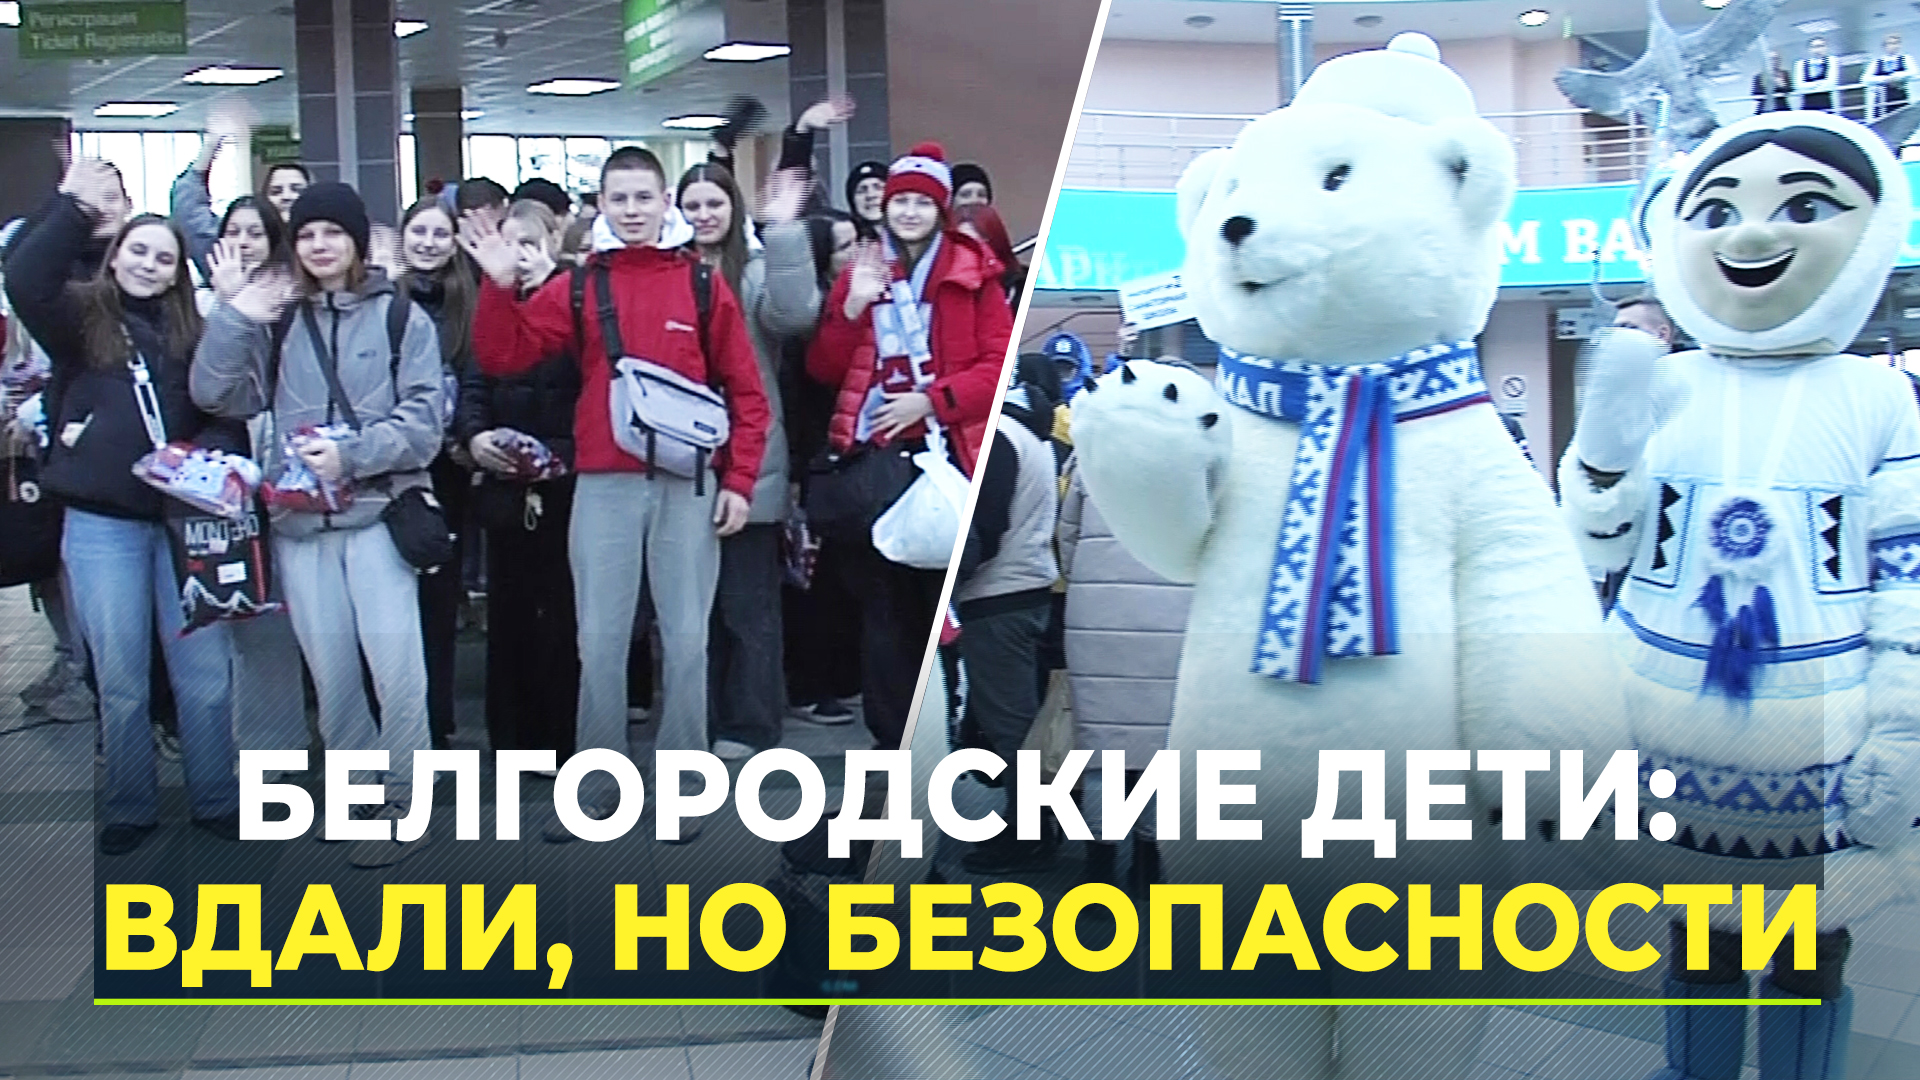 Детей из Белгородской области увезли на Ямал